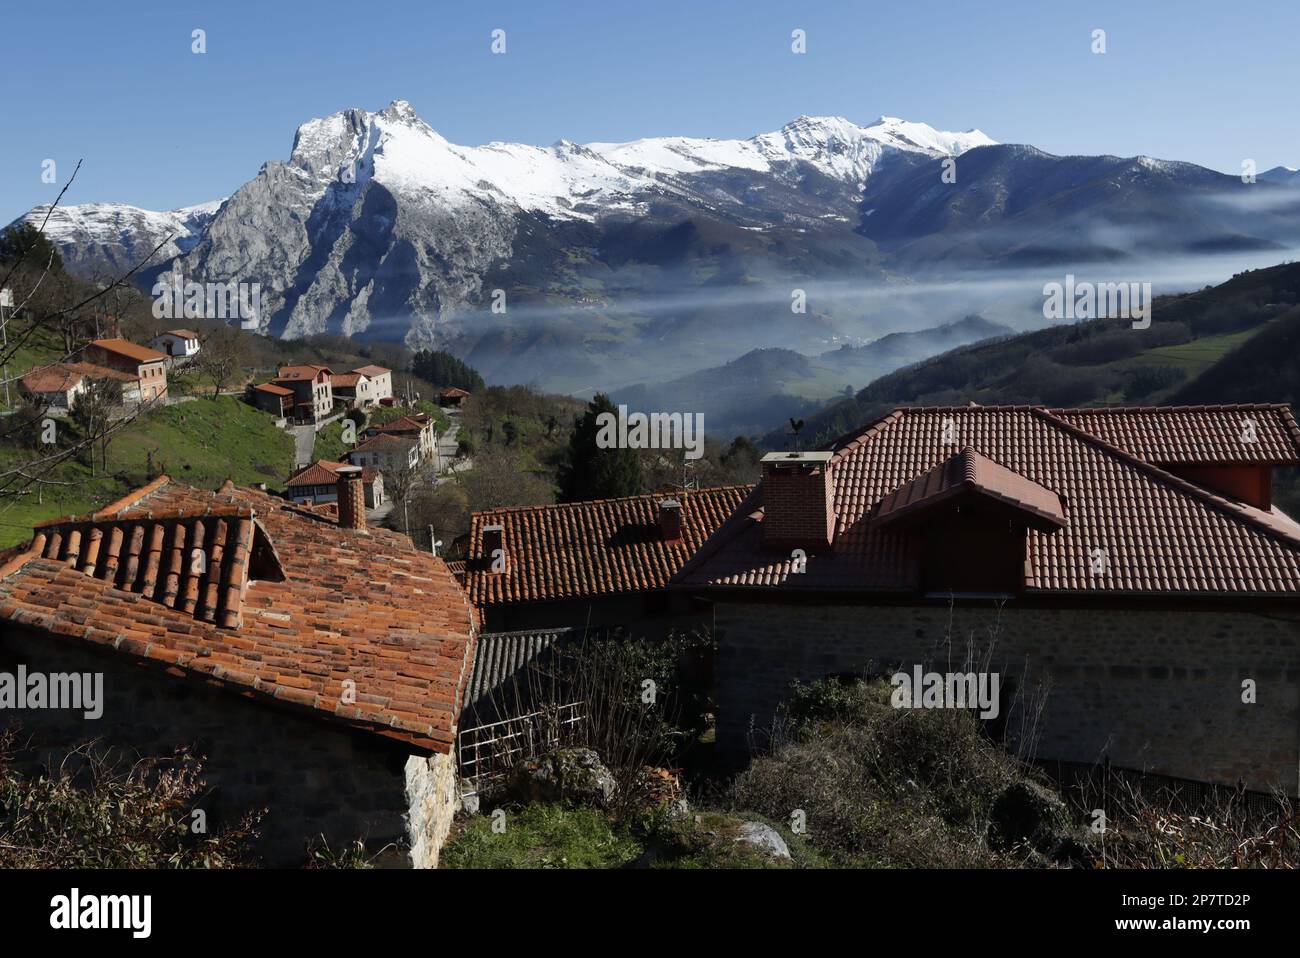 Tejados de teja roja y casa del pueblo de Colio en el valle con niebla  de Liébana, con sus prados verdes y la montaña nevada  que los circunda.. Stock Photo